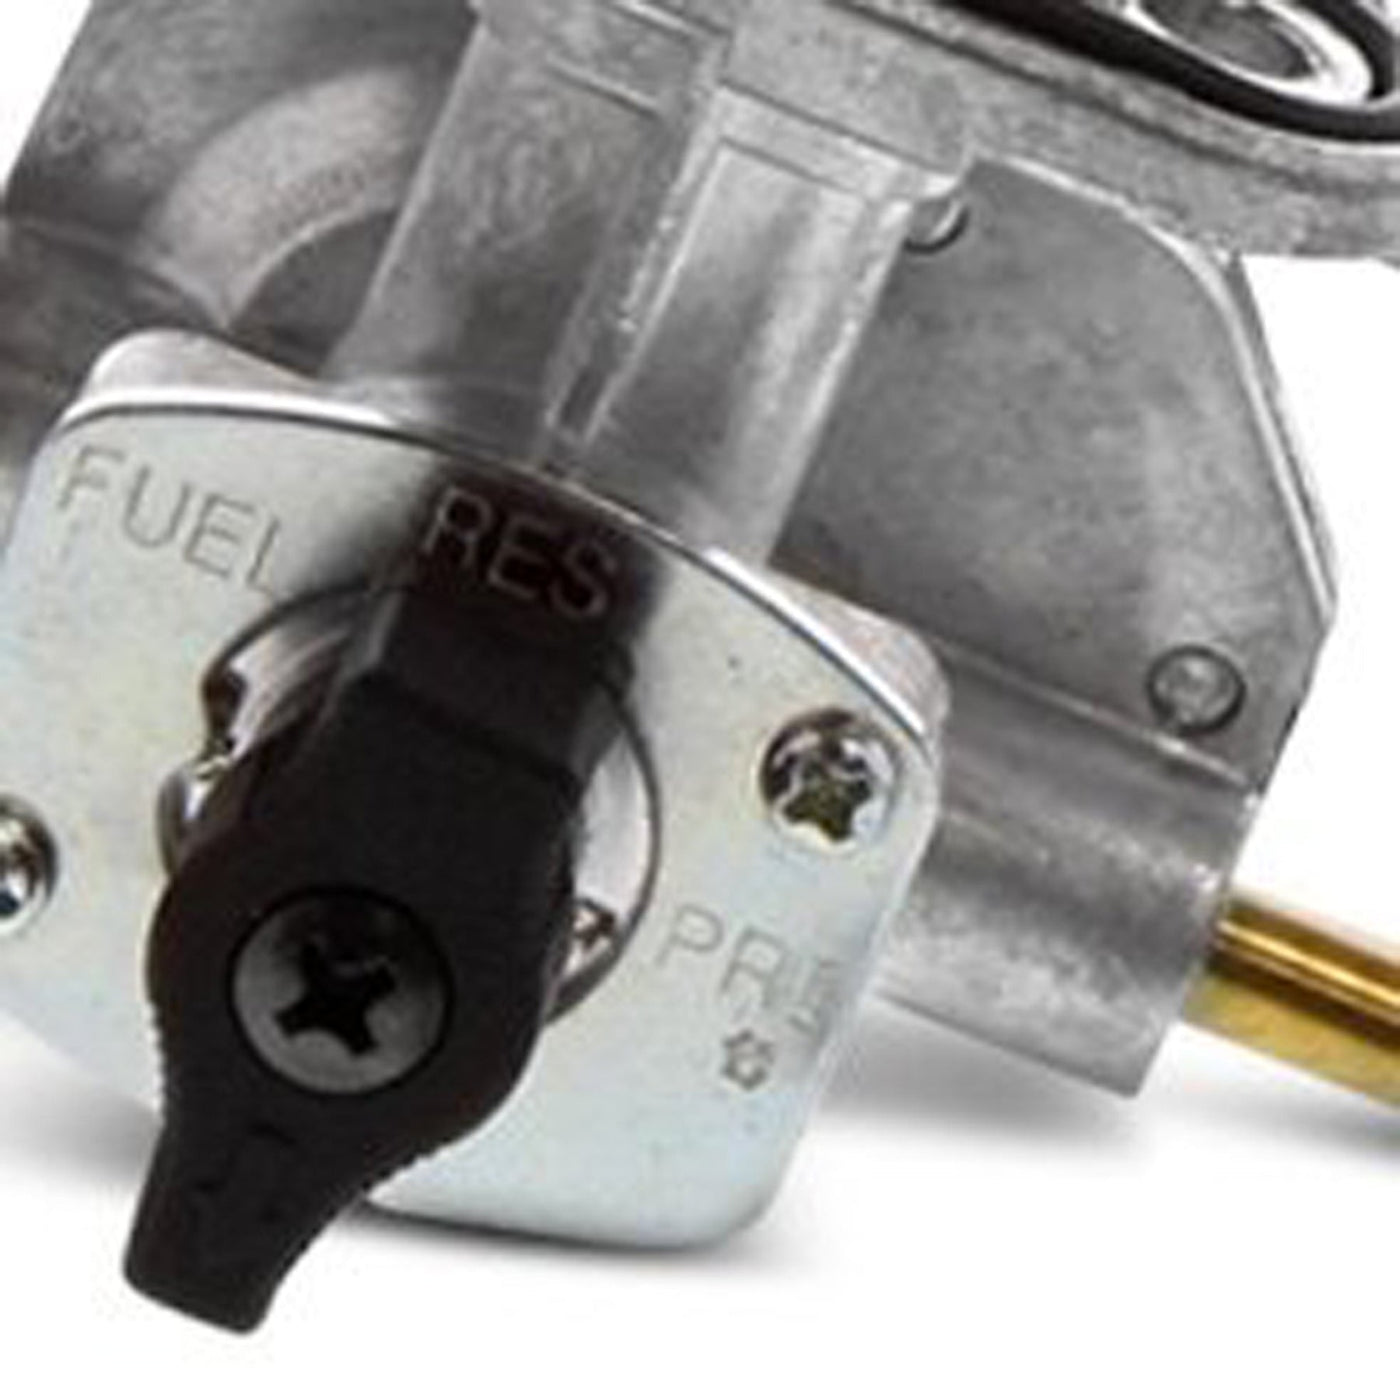 Fuel Star FS101-0171 Fuel Valve Kit #FS101-0171